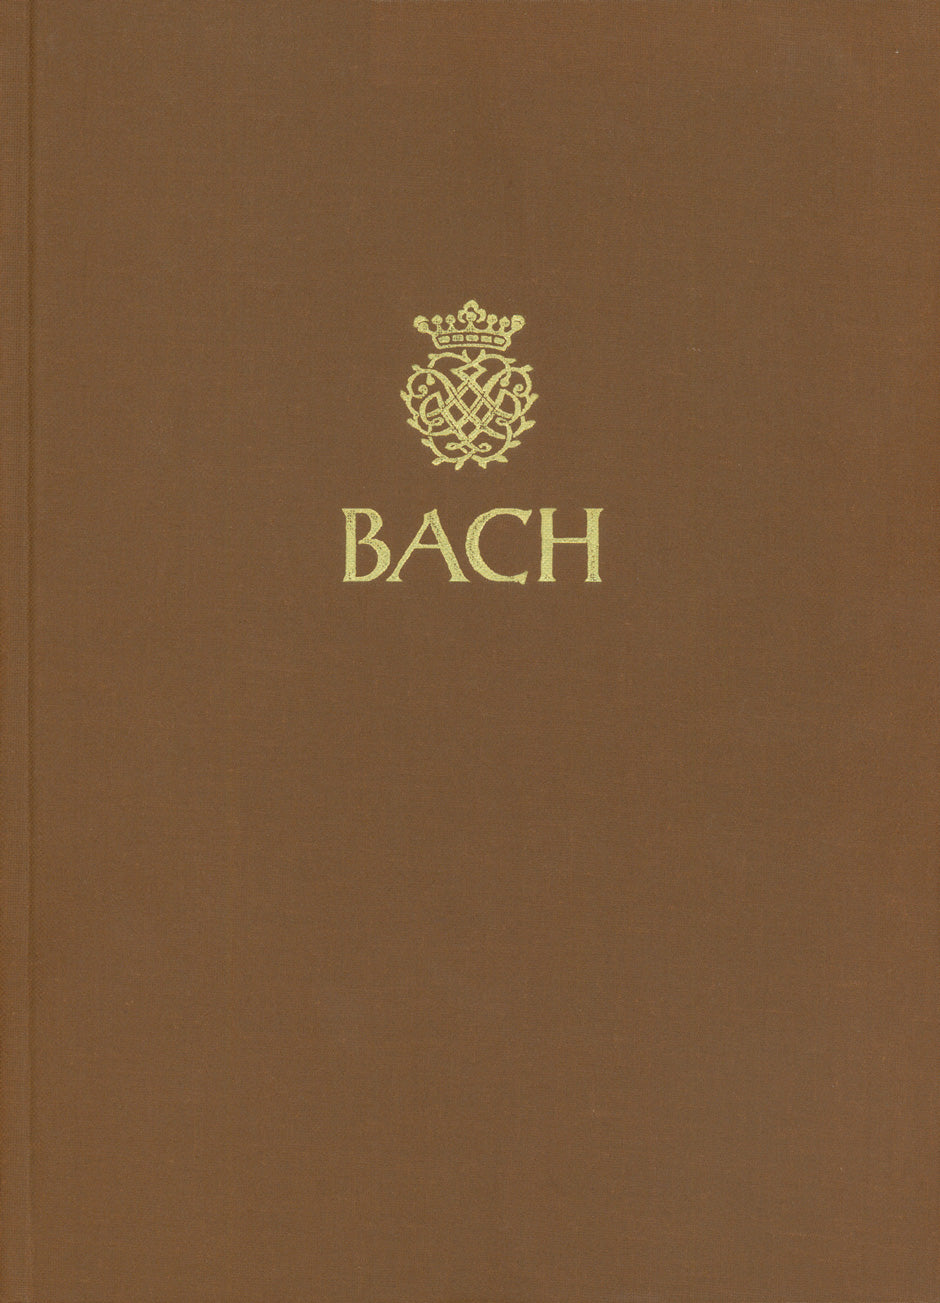 drei Sonaten für Viola da gamba und Cembalo BWV 1027-1029 -Kammermusikwerke, Band 4-